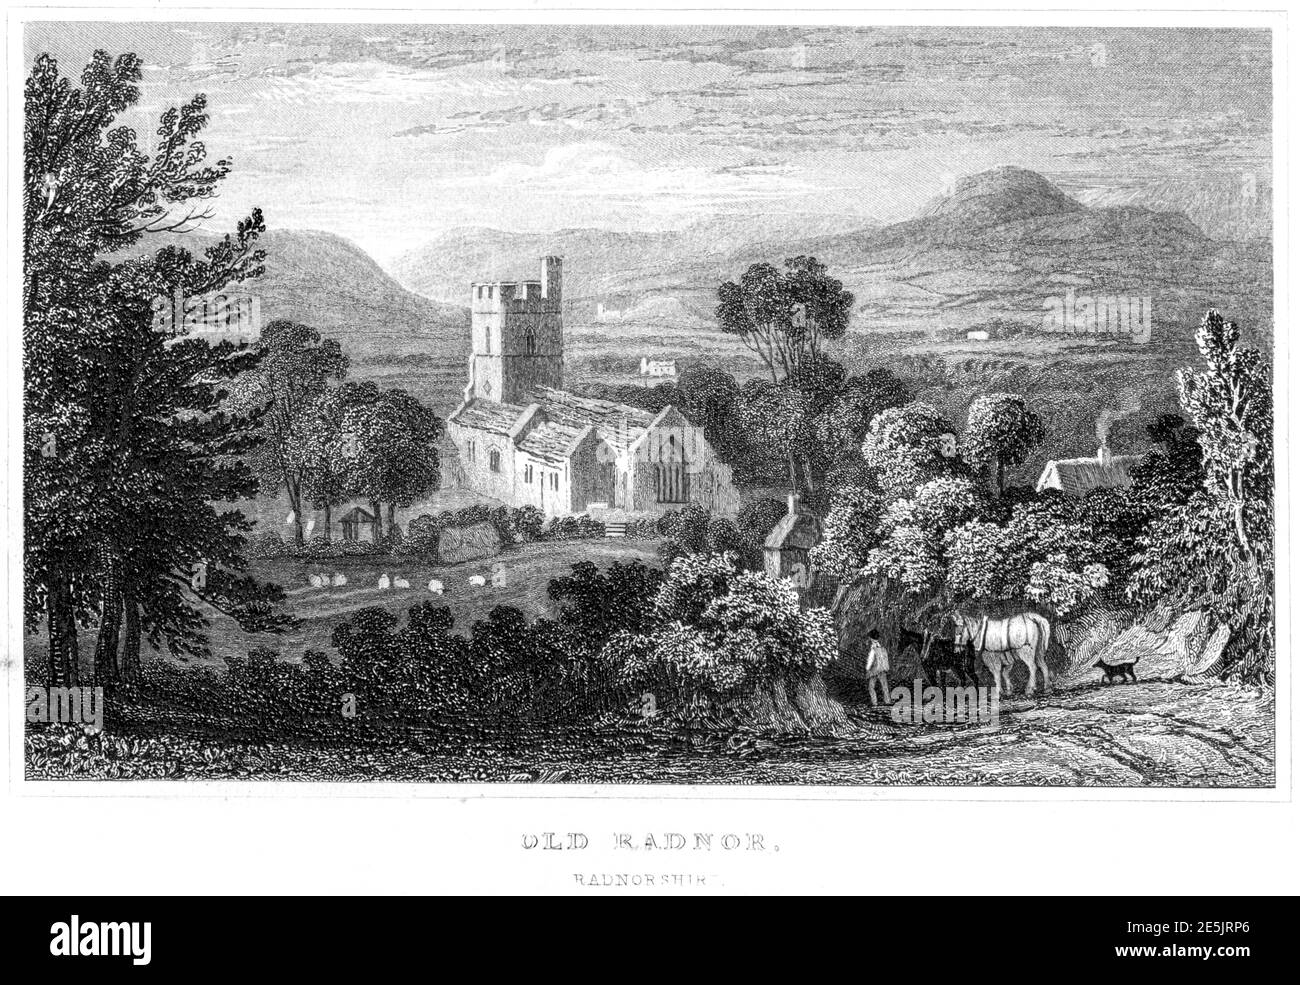 Ein Stich von Old Radnor, Radnorshire gescannt mit hoher Auflösung aus einem Buch im Jahr 1854 veröffentlicht. Für urheberrechtlich frei gehalten. Stockfoto